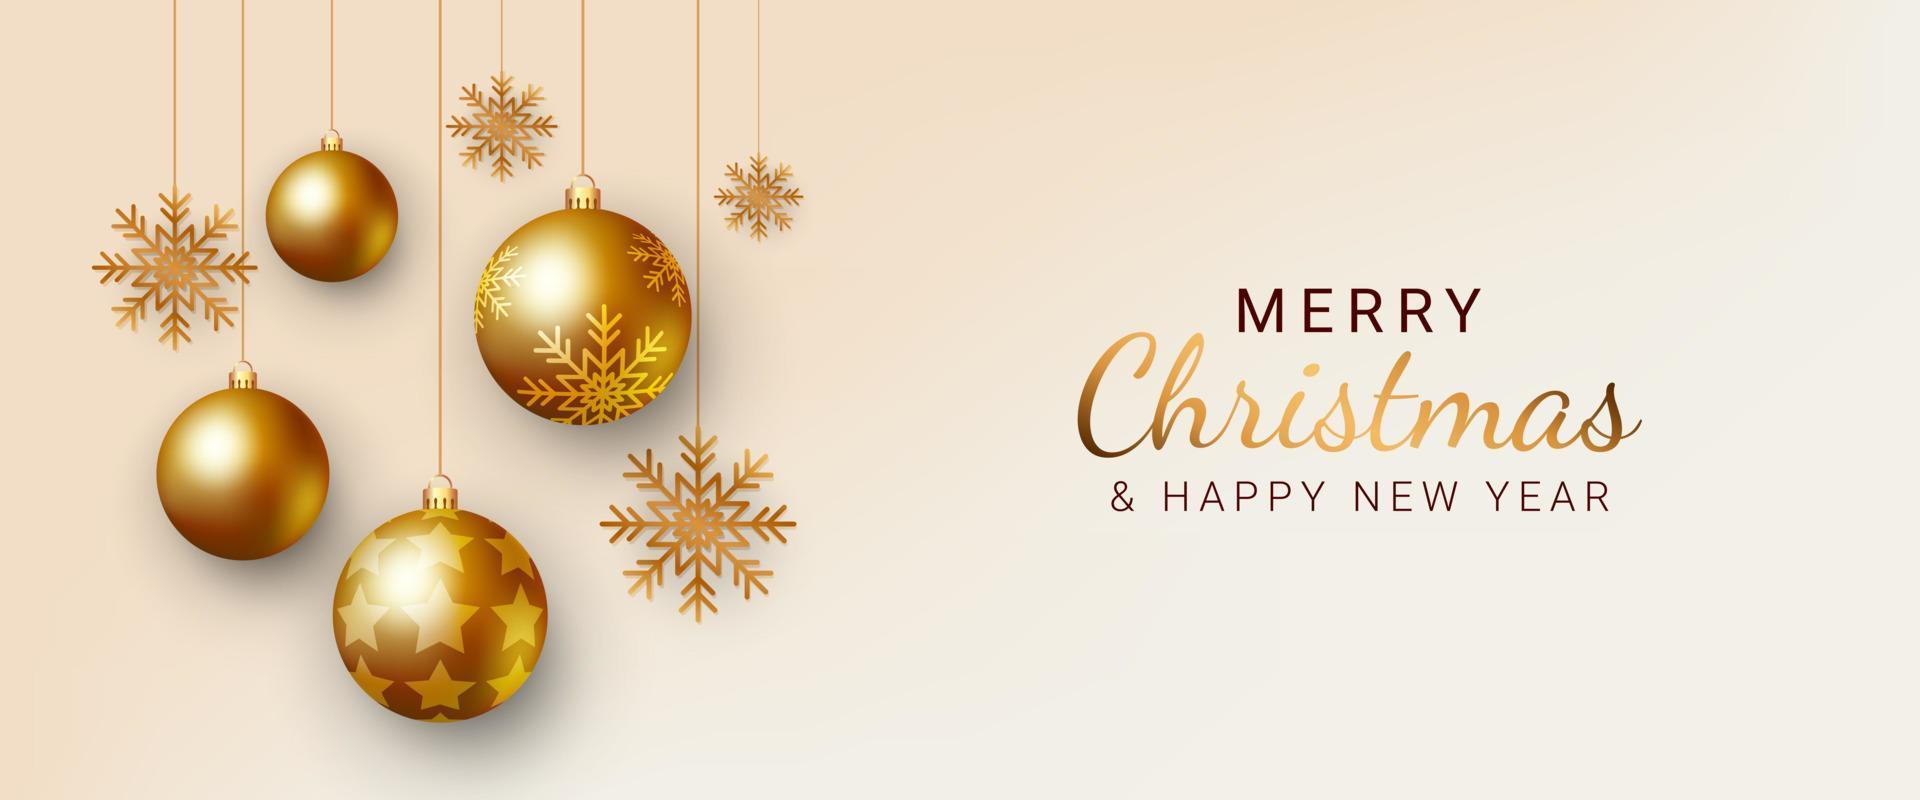 pancarta de navidad diseño de fondo de navidad con copos de nieve colgantes y adornos de bolas doradas. tarjetas de felicitación navideñas, invitaciones, encabezados. ilustración vectorial vector